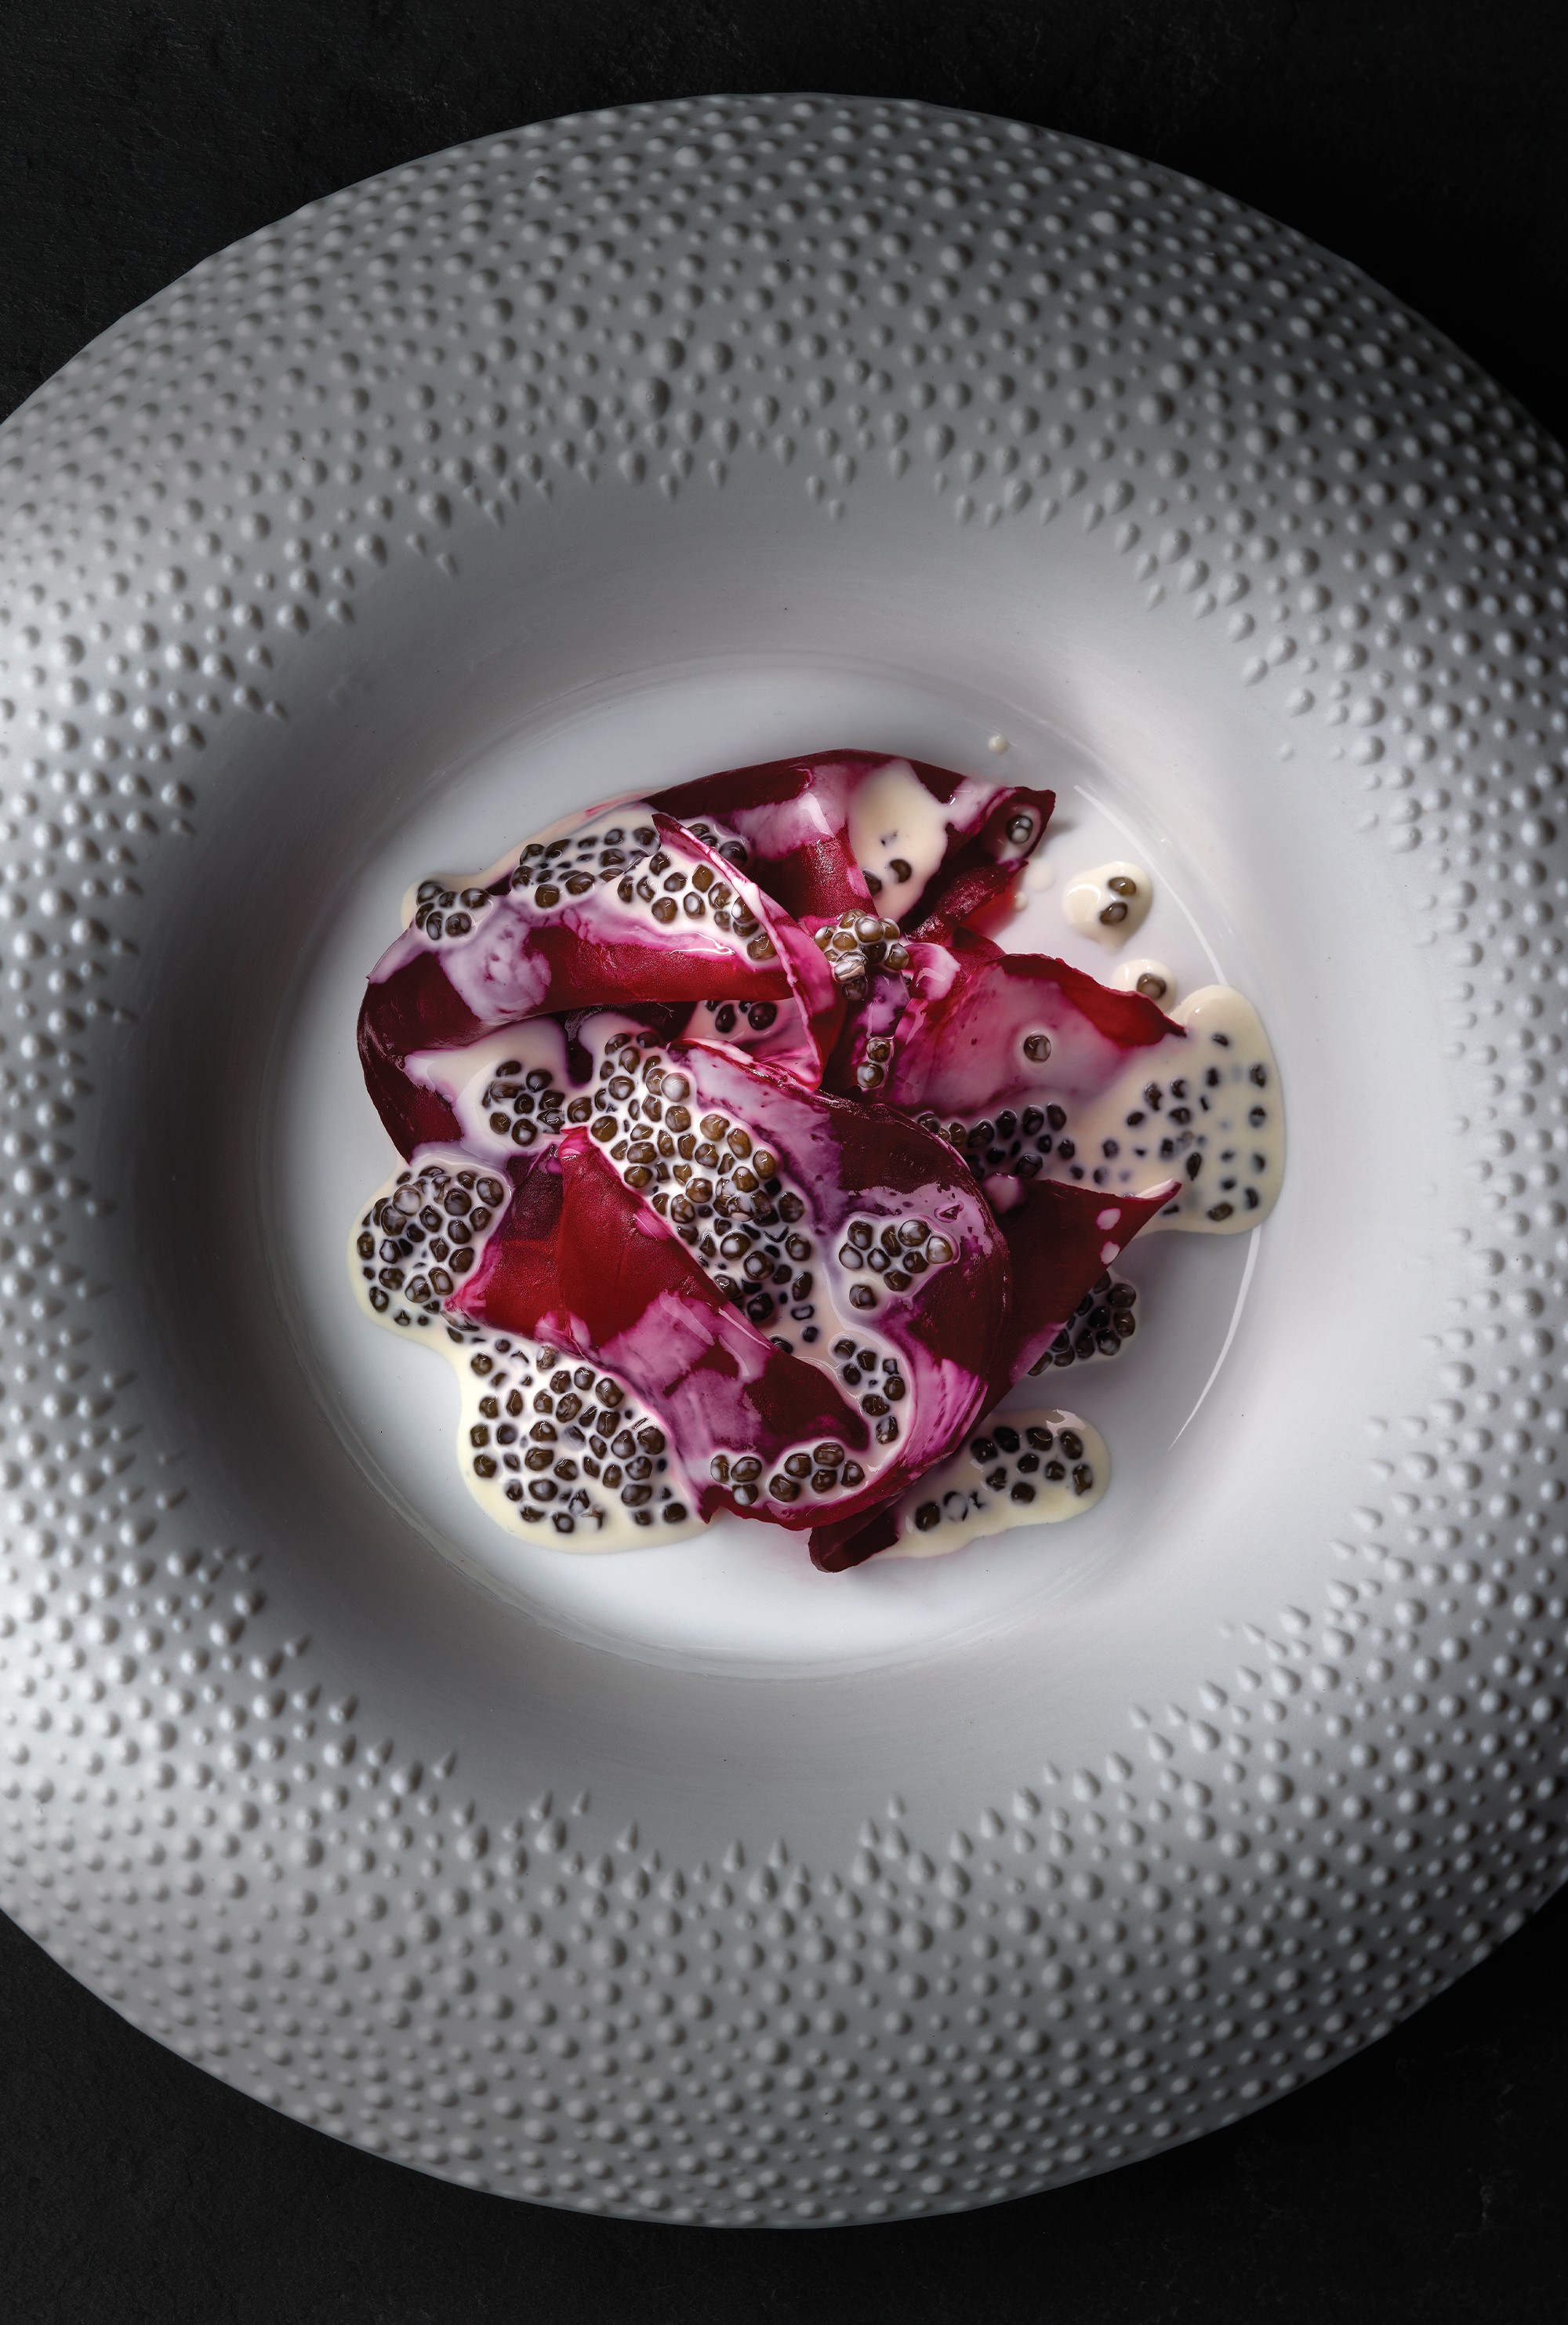 Por dentro do Número 1: Beterraba da horta do restaurante com molho de caviar (Foto: divulgação)